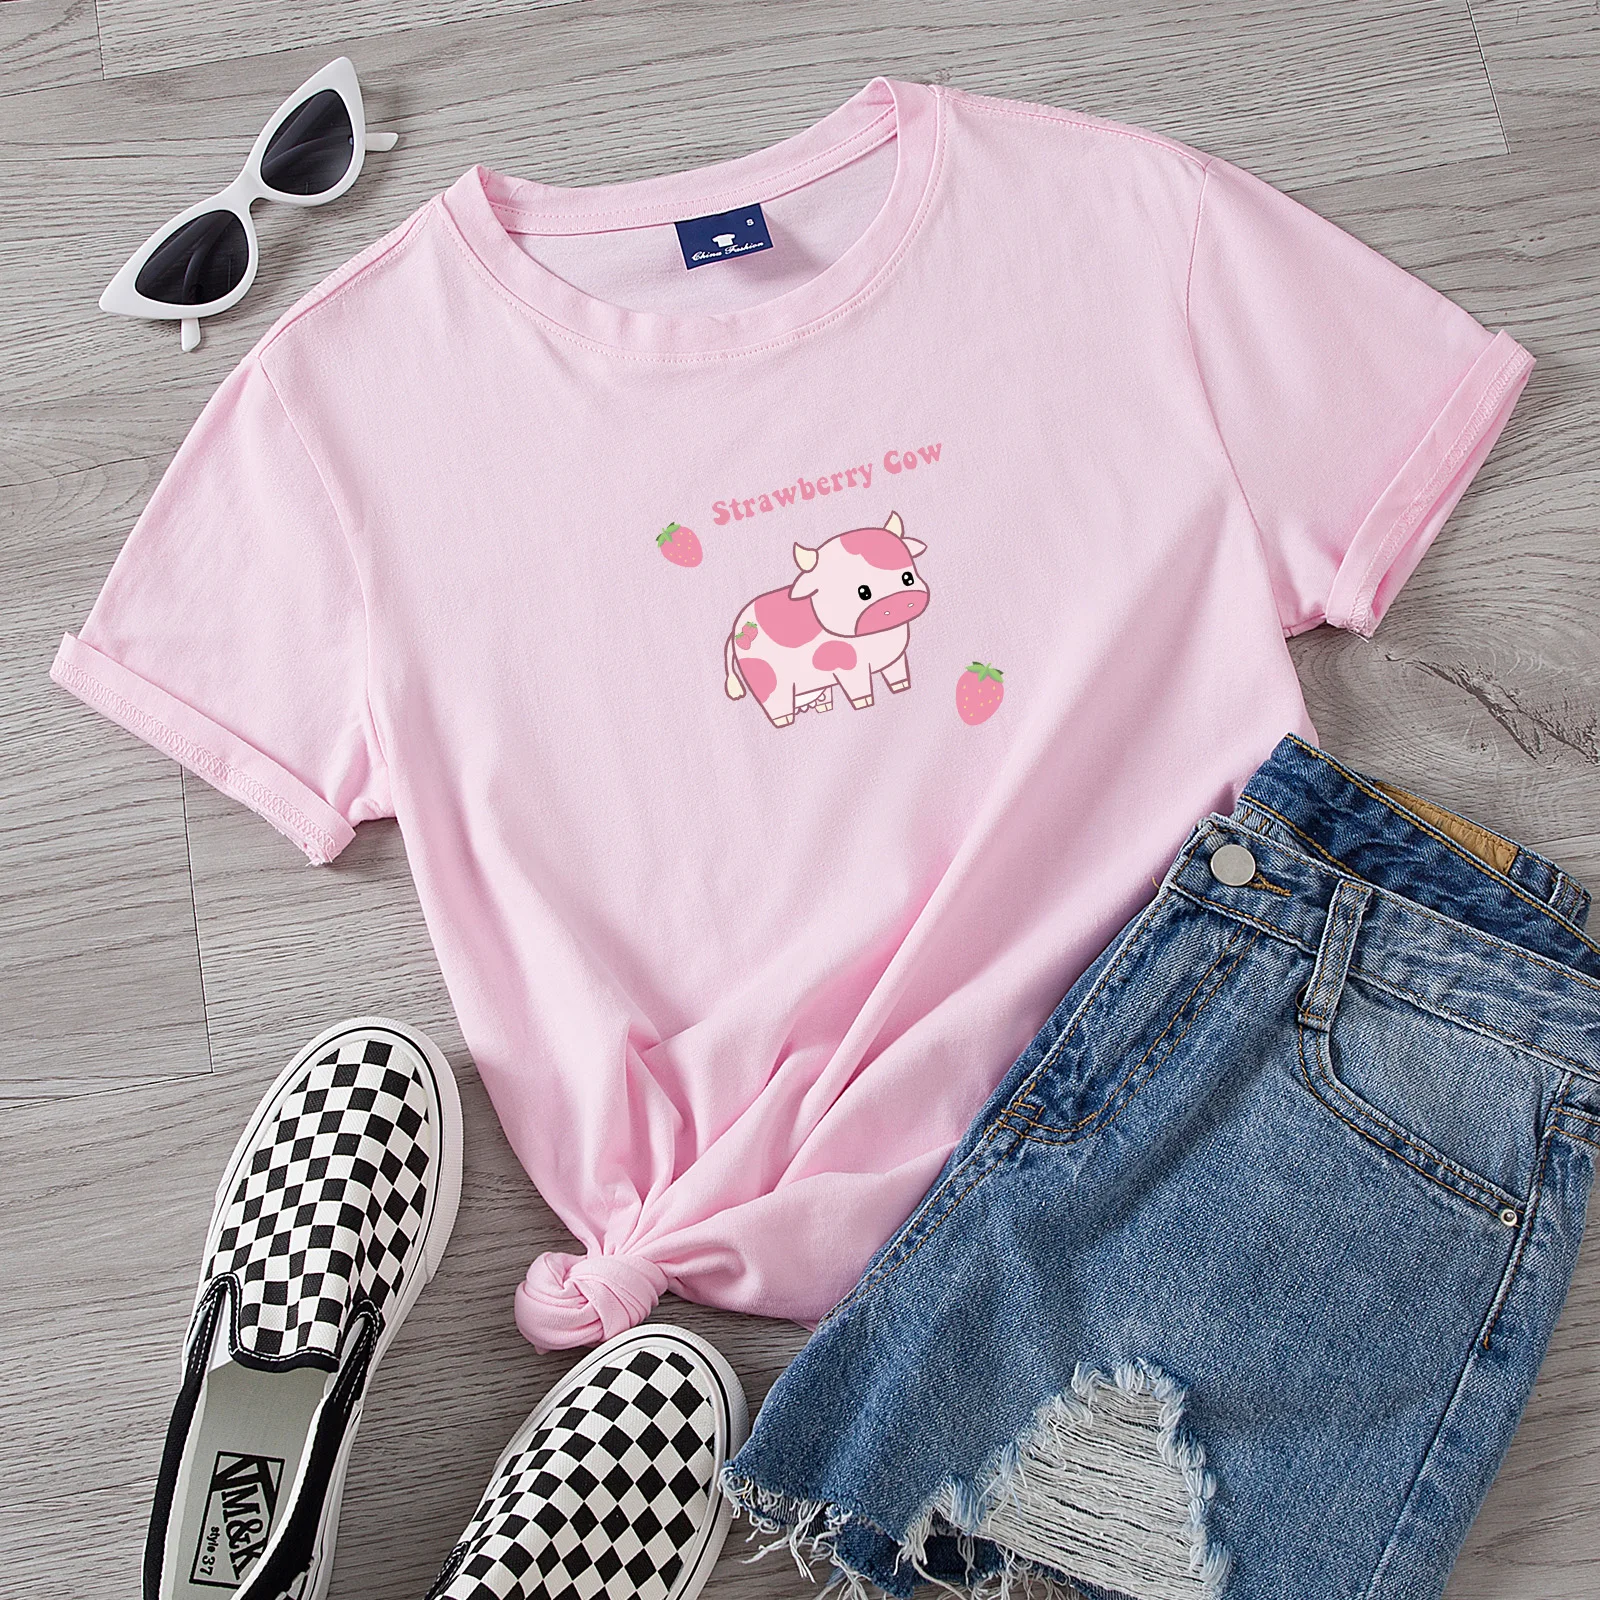 

Футболка женская хлопковая свободного кроя, милая Повседневная рубашка с рисунком клубники, коровы, милый мультяшный розовый топ для девуш...